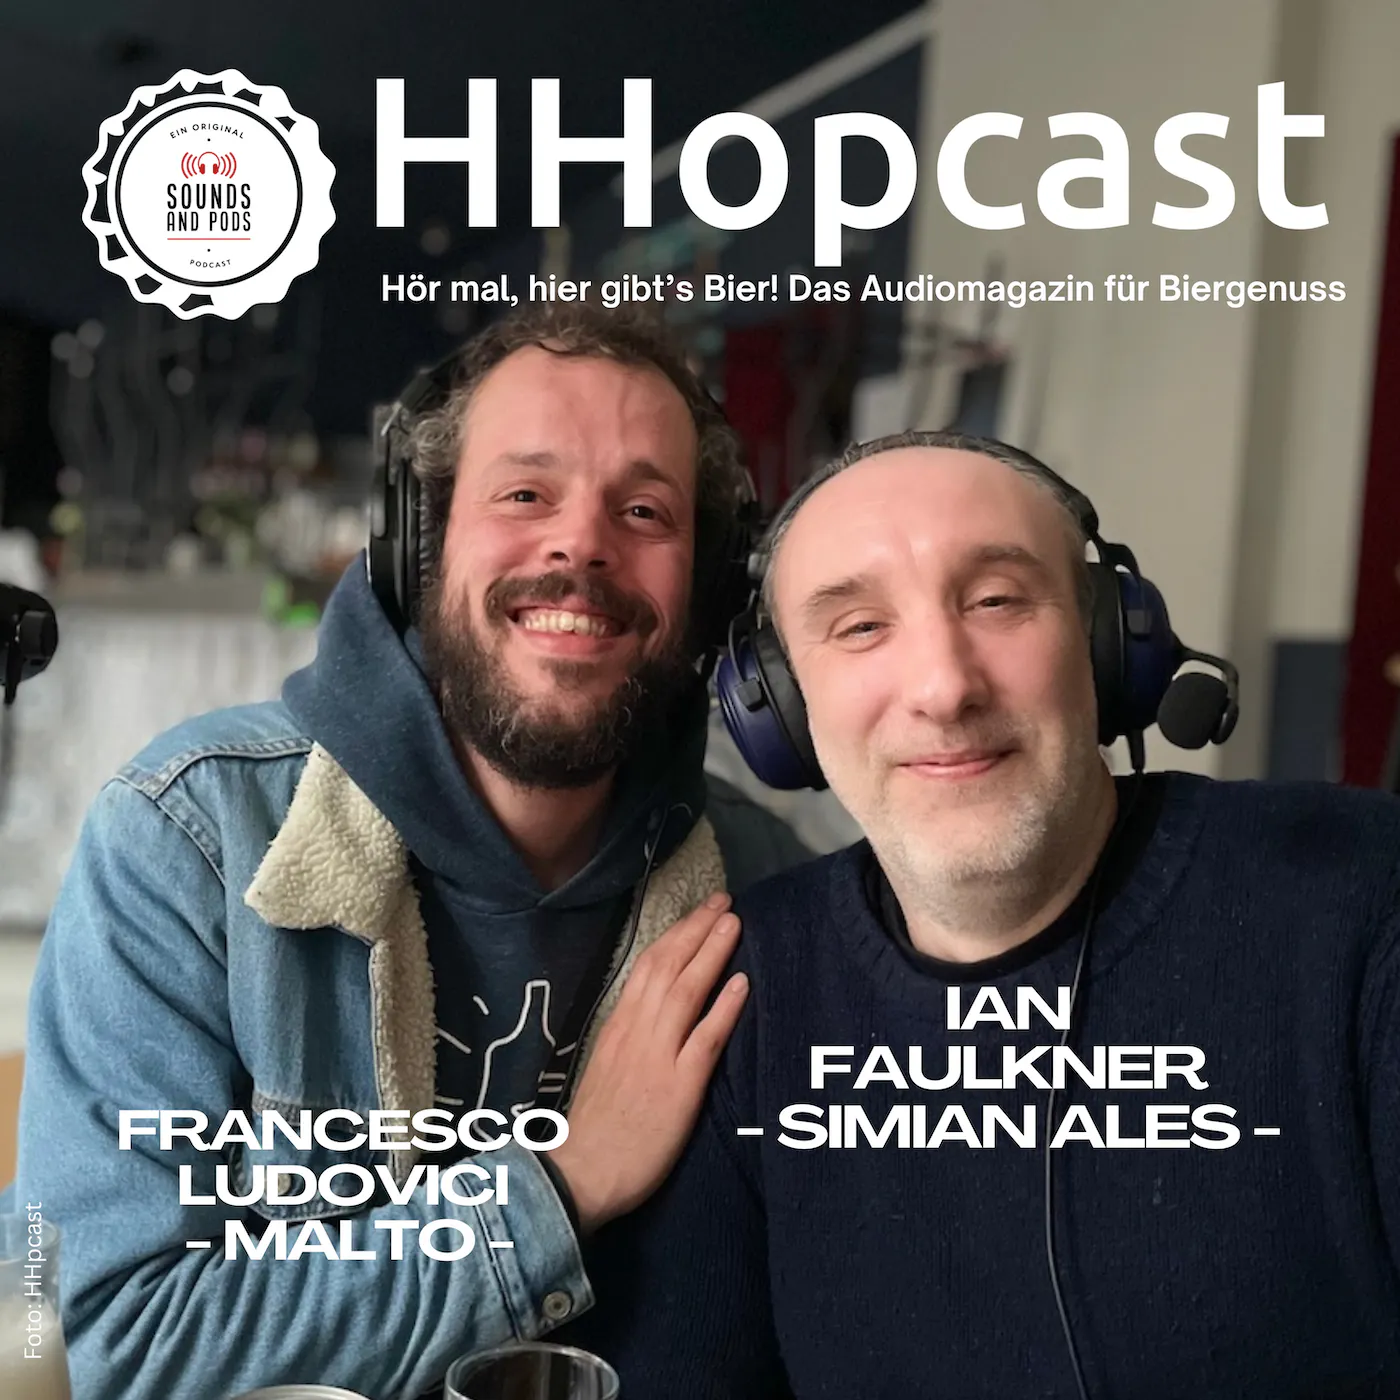 Der Brite Ian Faulkner und der Italiener Francesco Ludovici haben in Hamburg und Elmshorn ihre eigene Brauerei und Bierbar gegründet. Porträtfoto für HHopcast.